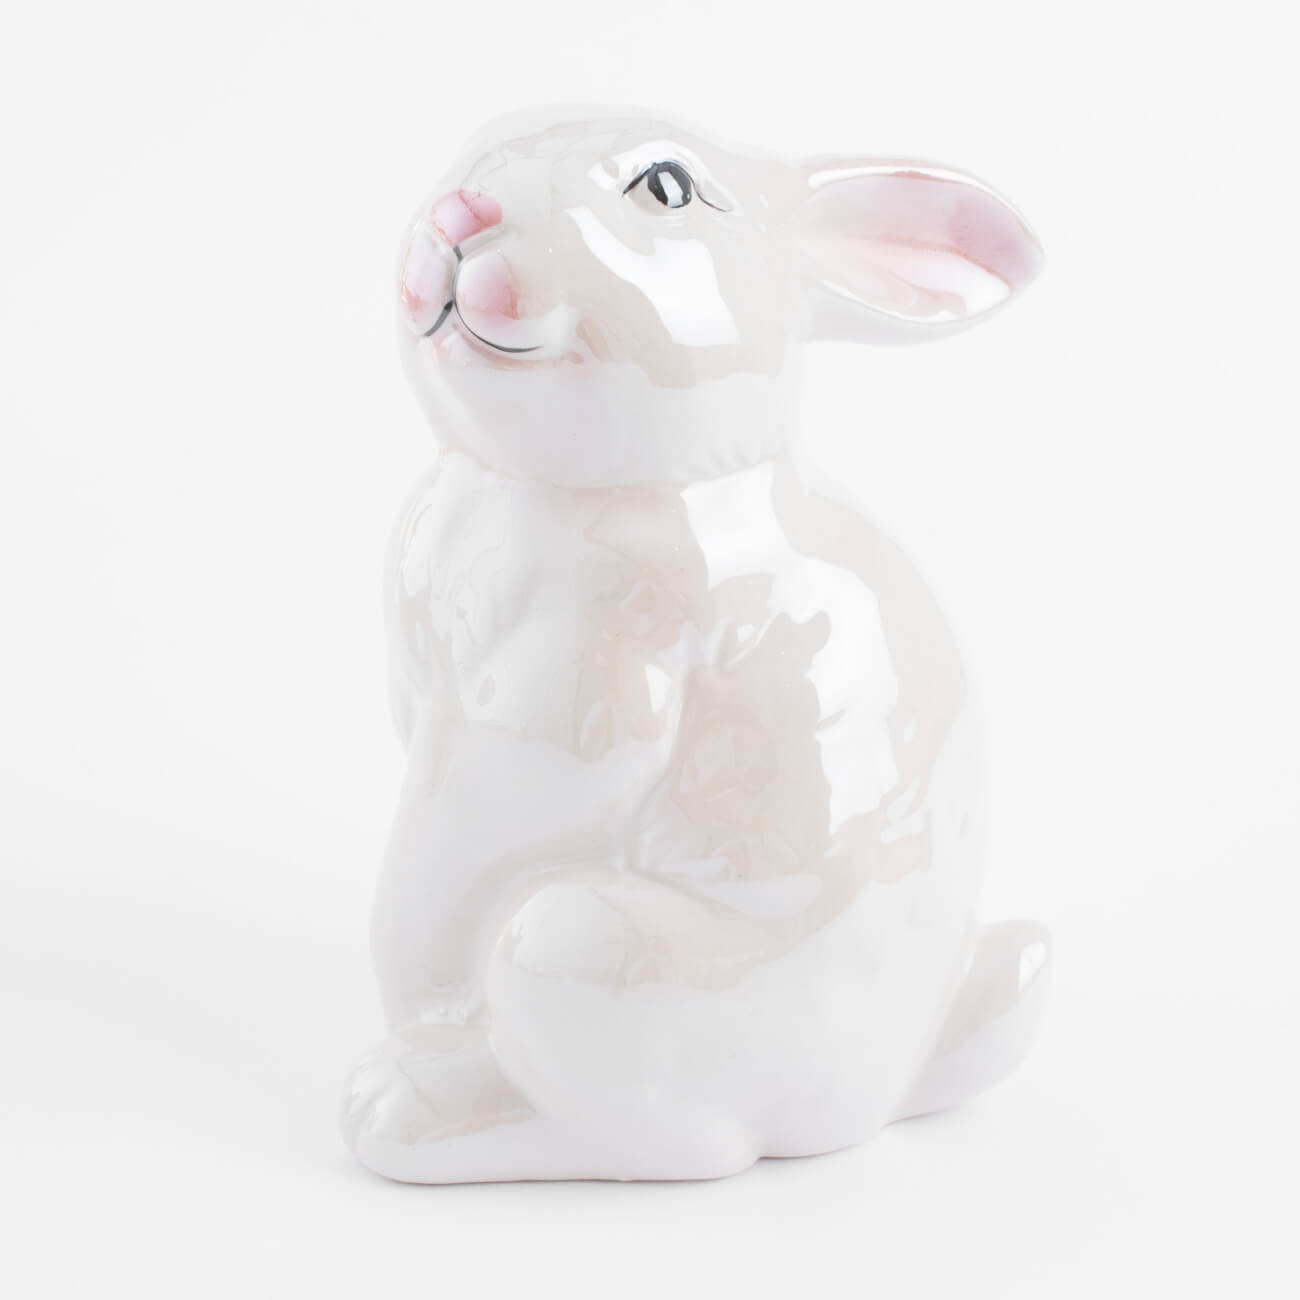 емкость для хранения 17х14 см 1 5 л с ручкой керамика молочная перламутр кролик easter Статуэтка, 16 см, керамика, молочная, перламутр, Кролик, Easter